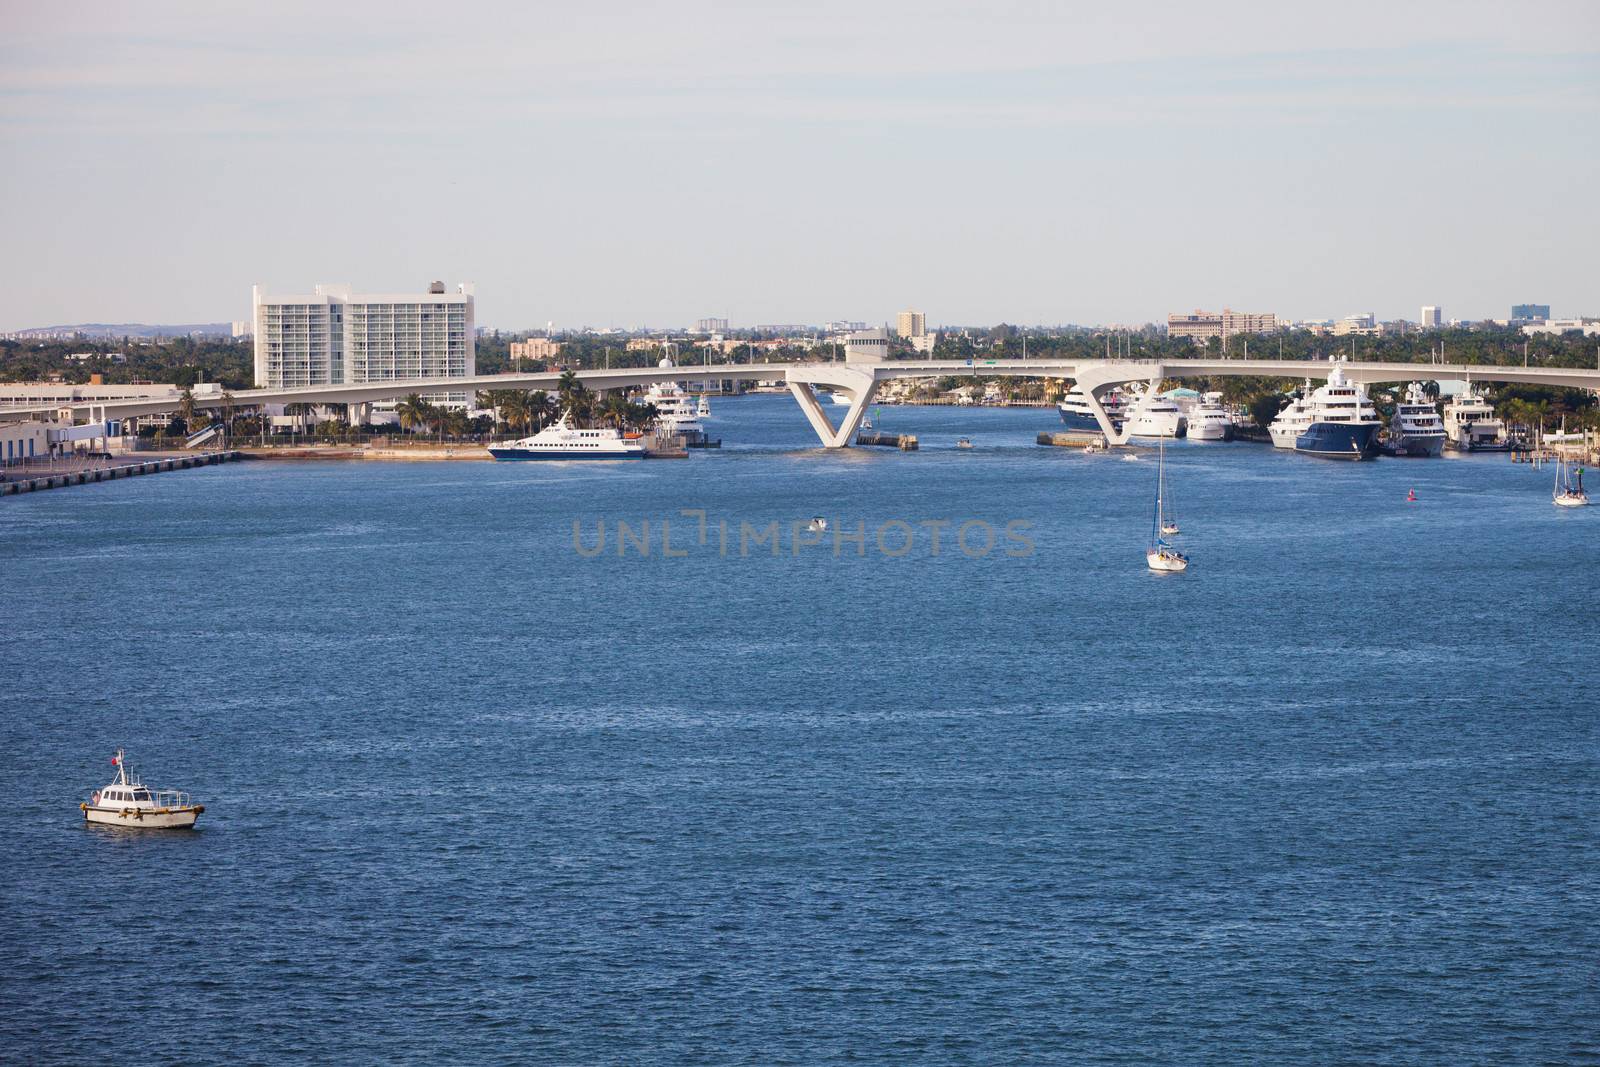 Fort Lauderdale Waterway by Creatista